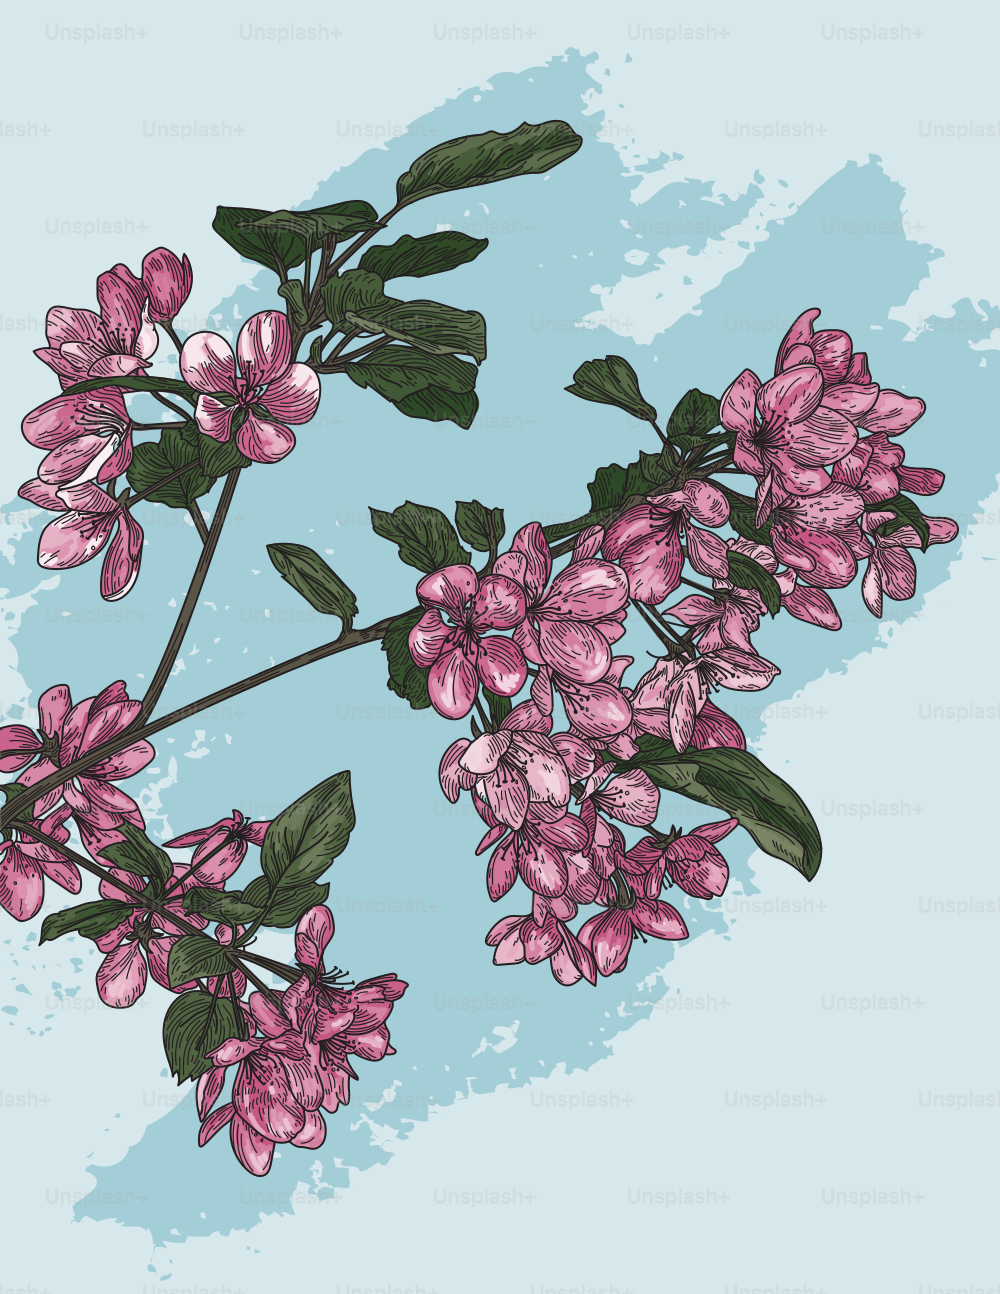 Ilustración lineal detallada de algunas flores en una rama de un manzano silvestre en flor.